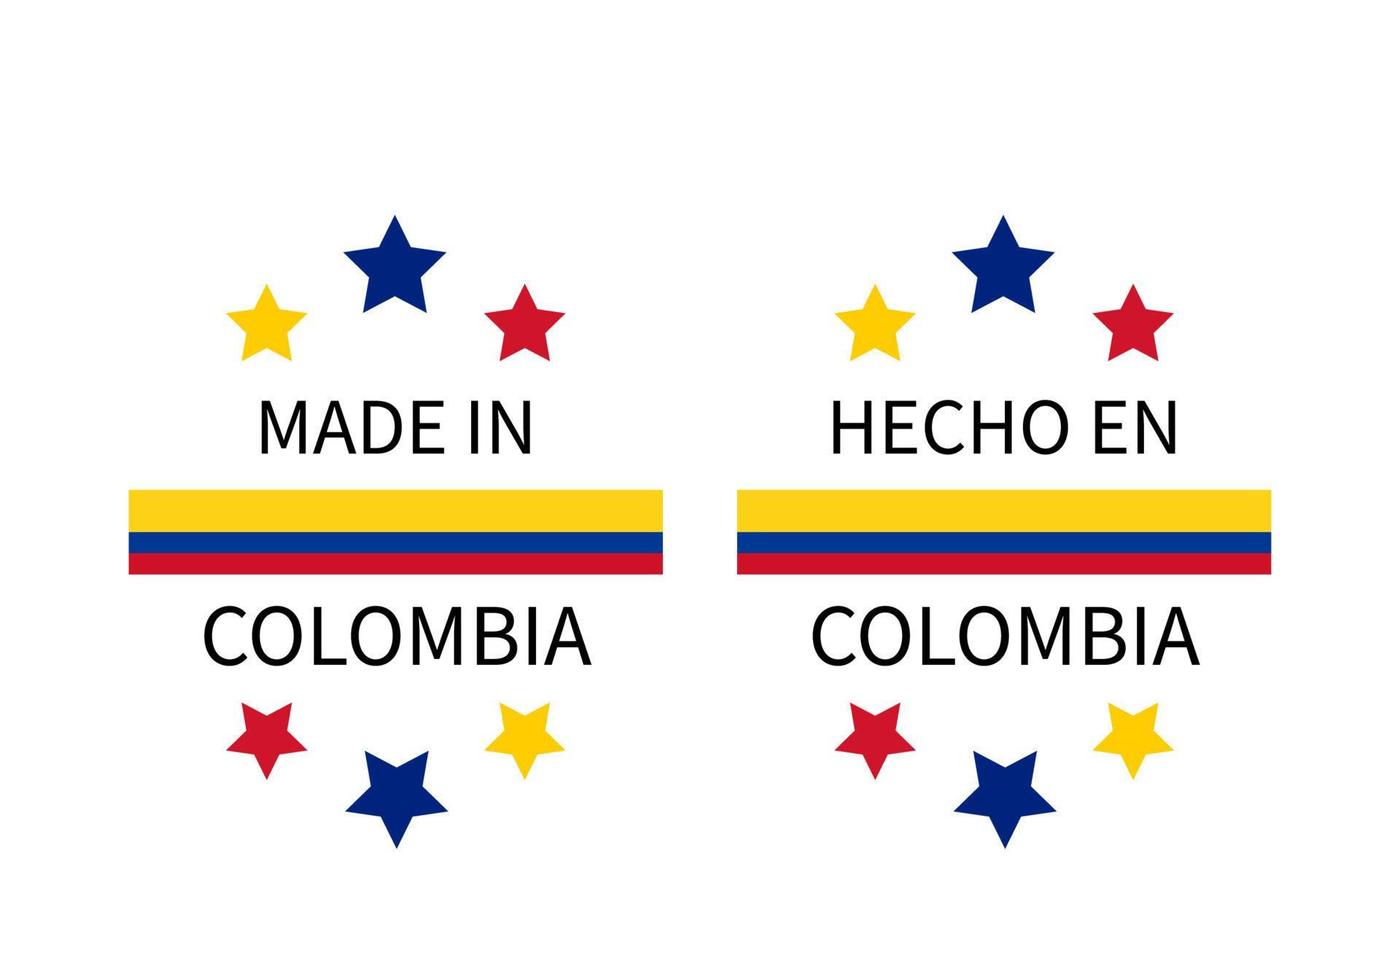 feitas em rótulos colombianos em inglês e em espanhol. ícone de vetor de marca de qualidade. perfeito para design de logotipo, etiquetas, crachás, adesivos, emblema, pacote de produtos